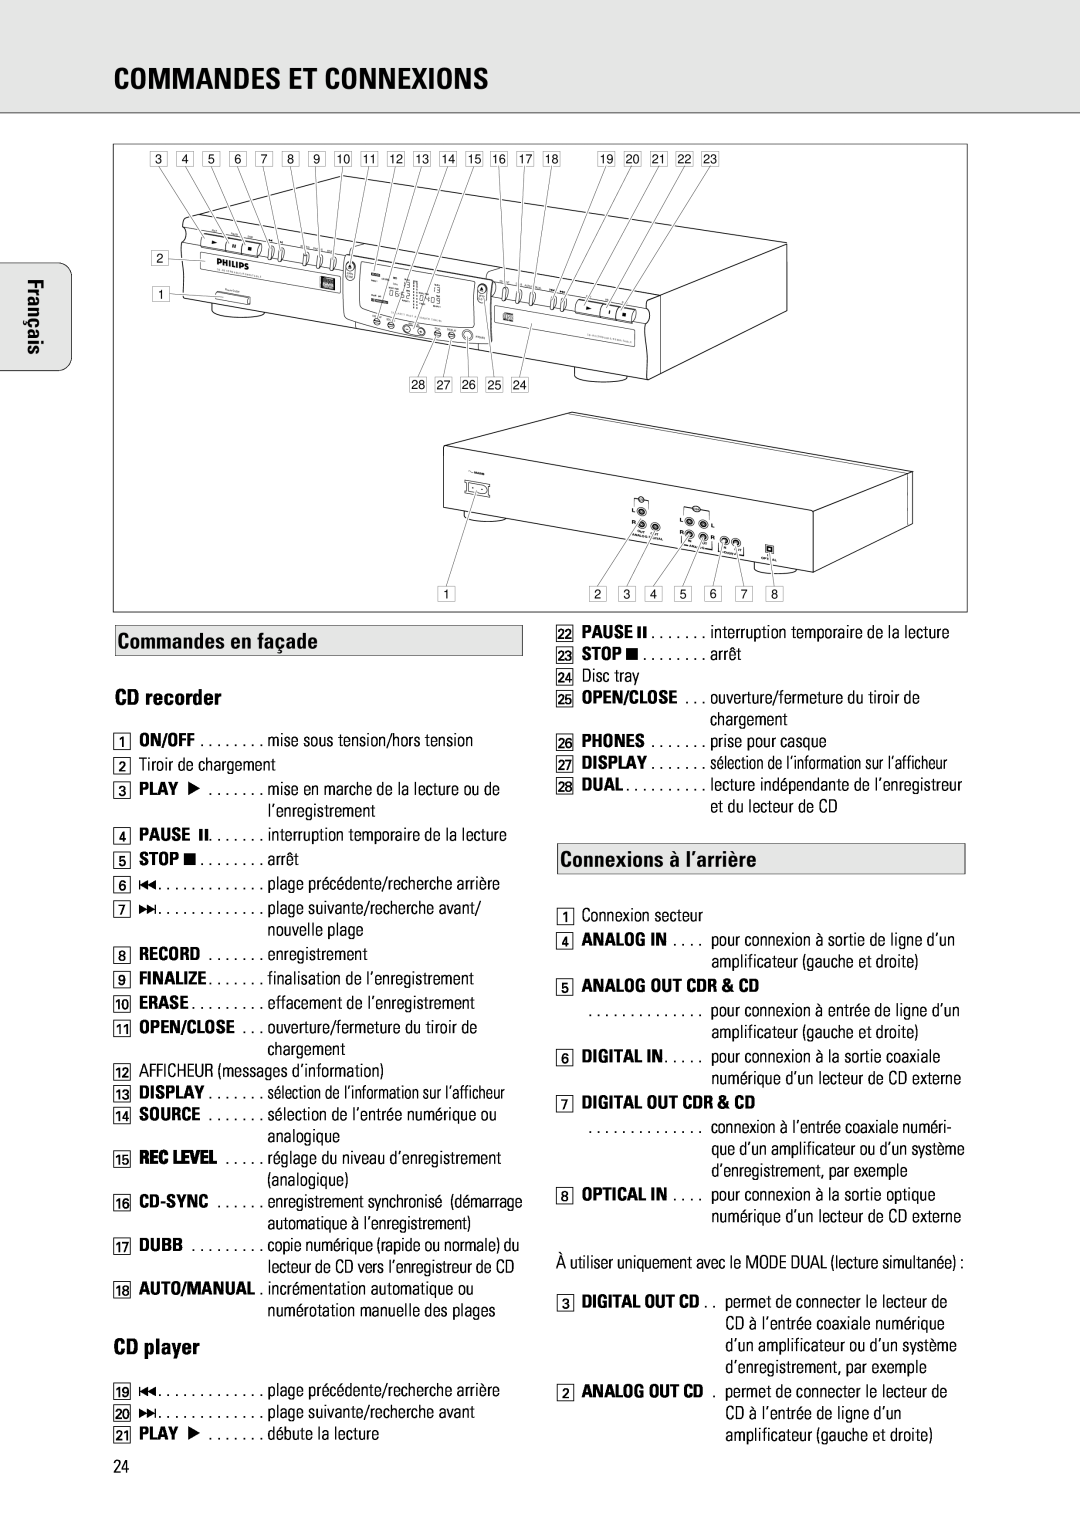 Philips 765 manual Commandes Et Connexions, Commandes en façade CD recorder, Connexions à l’arrière, Français, CD player 